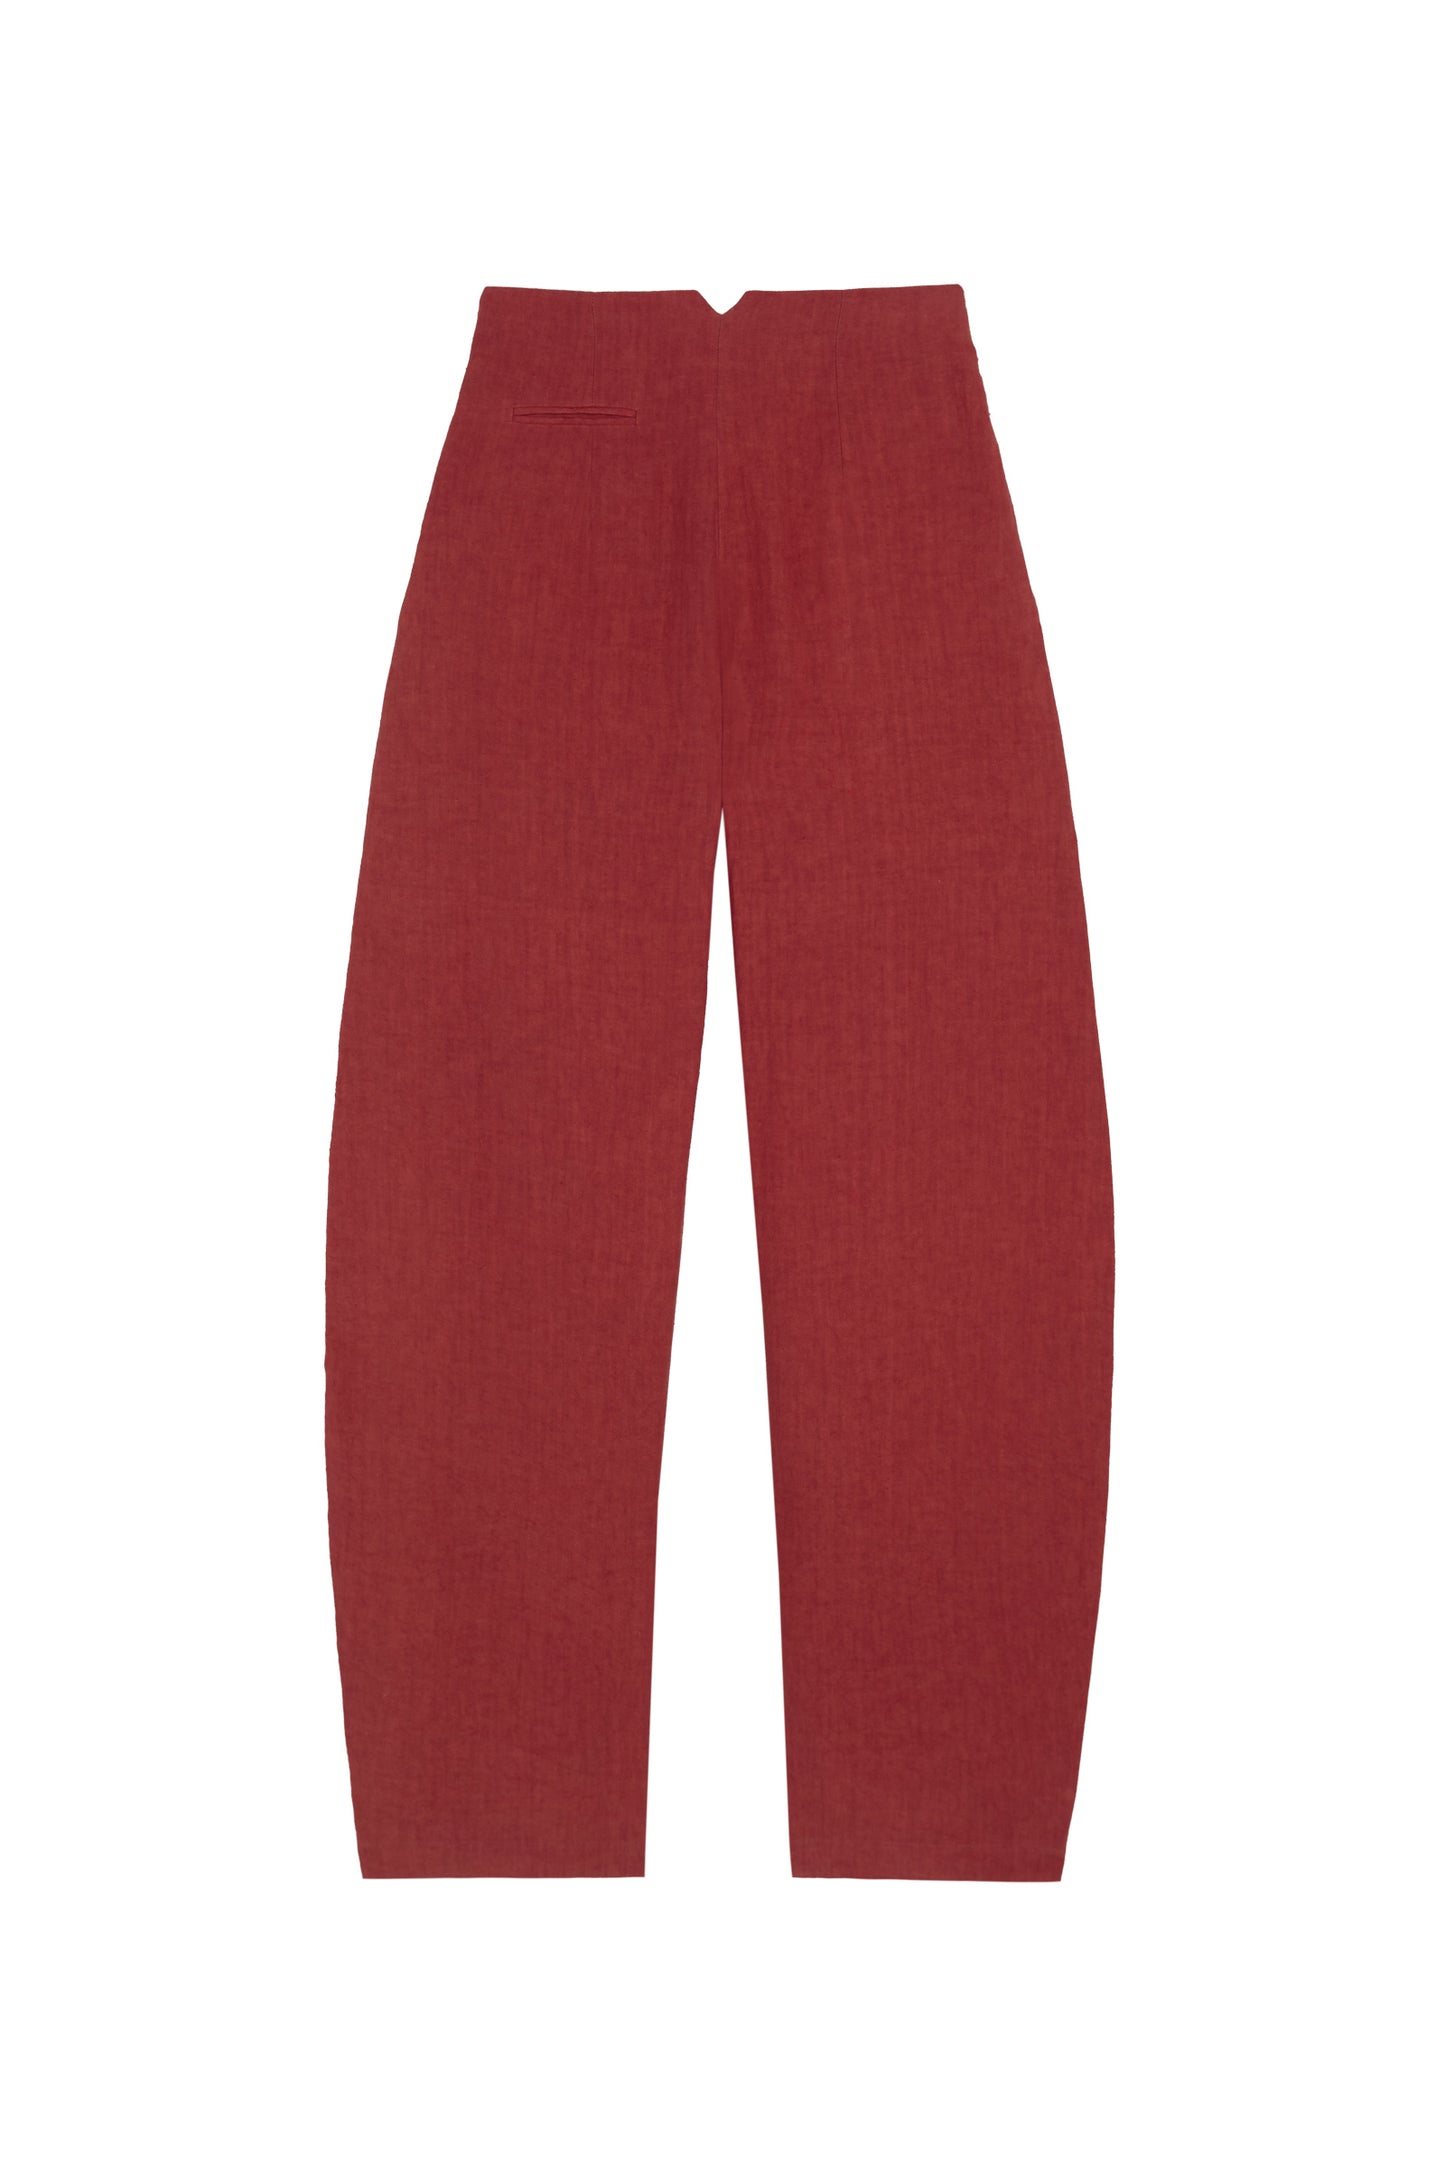 Marlo, pantalon en lino rojo